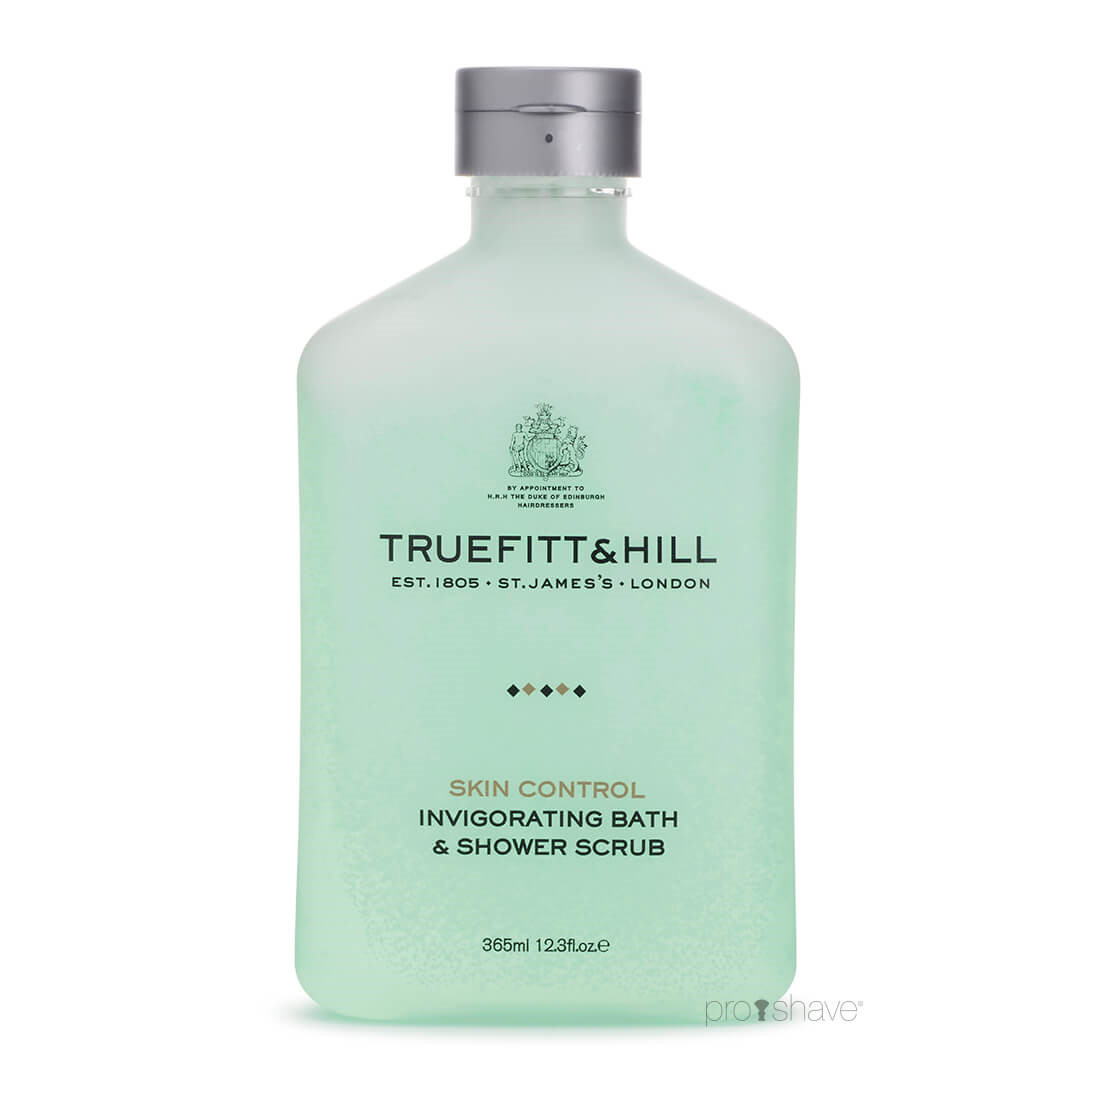 Billede af Truefitt & Hill Invigorating Bath & Shower Scrub, 365 ml.